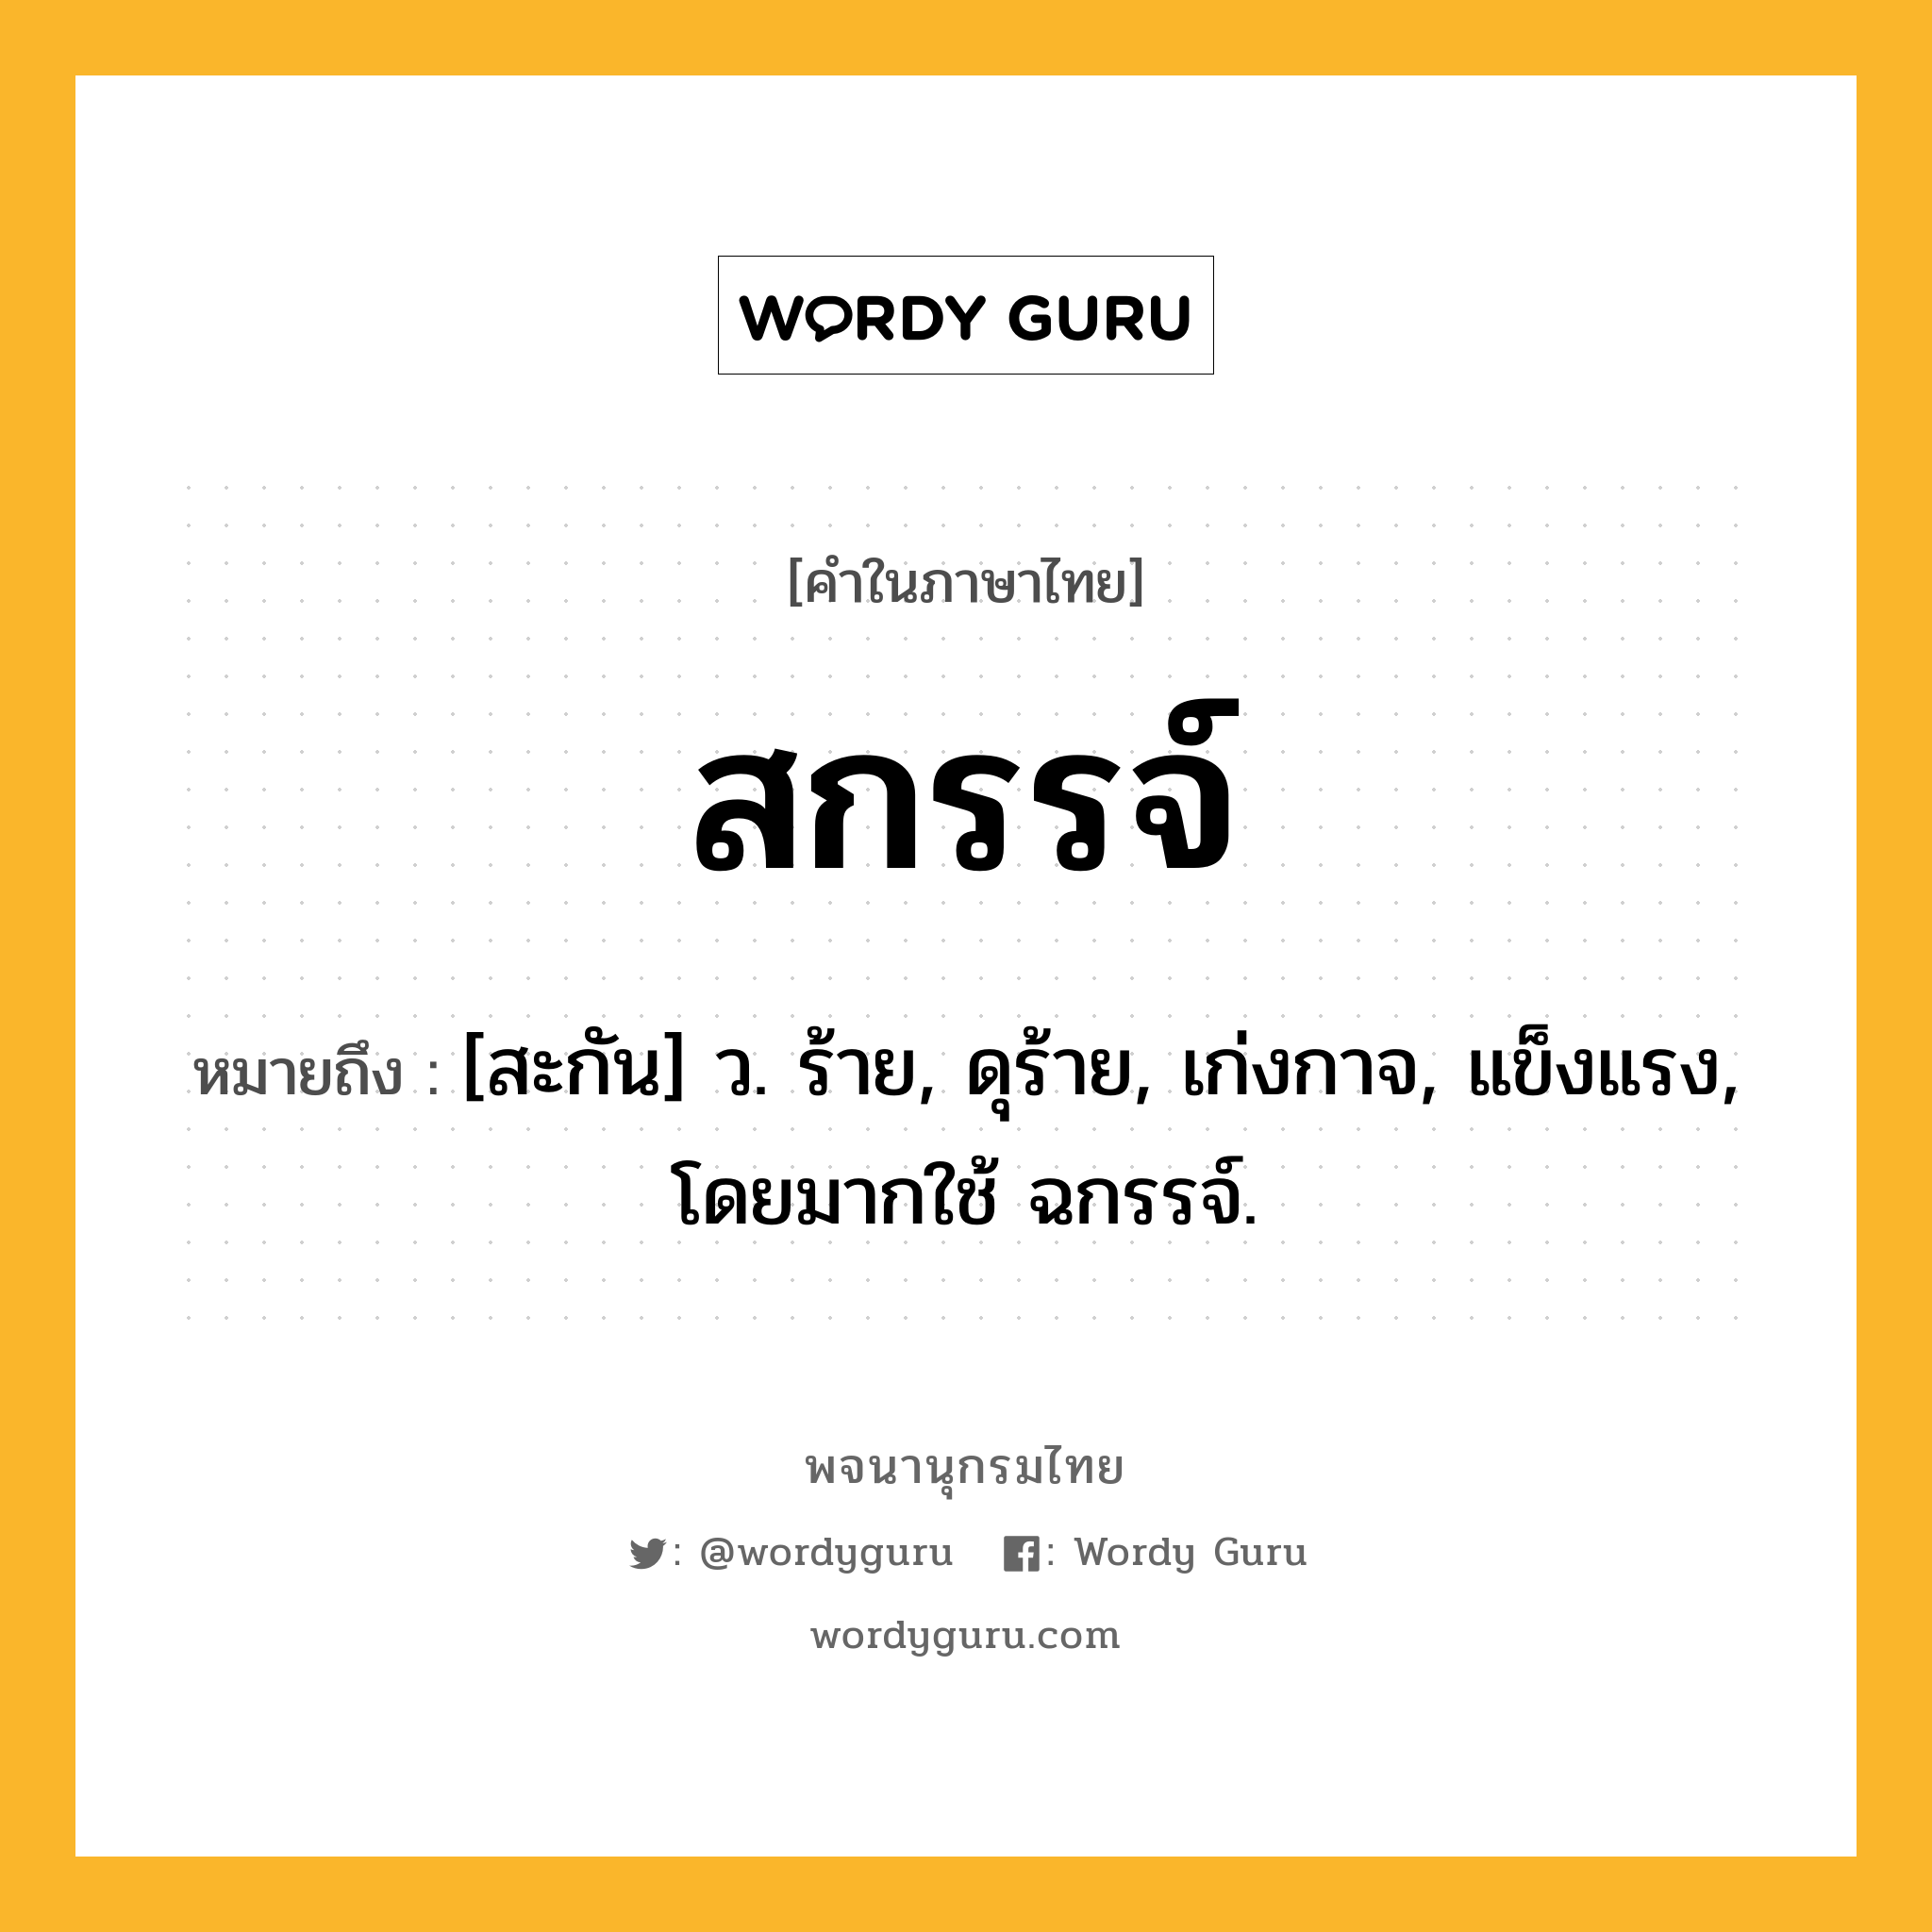 สกรรจ์ ความหมาย หมายถึงอะไร?, คำในภาษาไทย สกรรจ์ หมายถึง [สะกัน] ว. ร้าย, ดุร้าย, เก่งกาจ, แข็งแรง, โดยมากใช้ ฉกรรจ์.